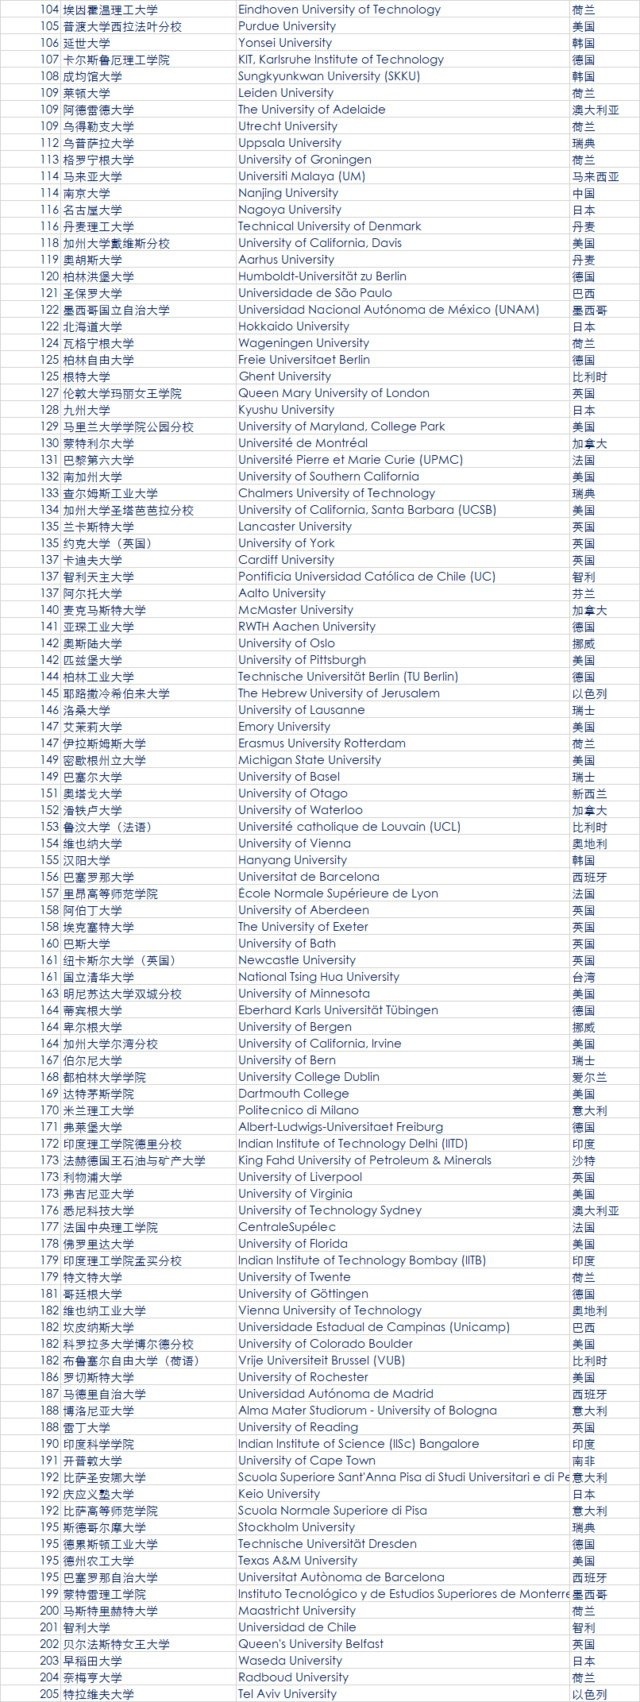 2018年QS世界大学排名发布 中国大陆6所高校进百强3